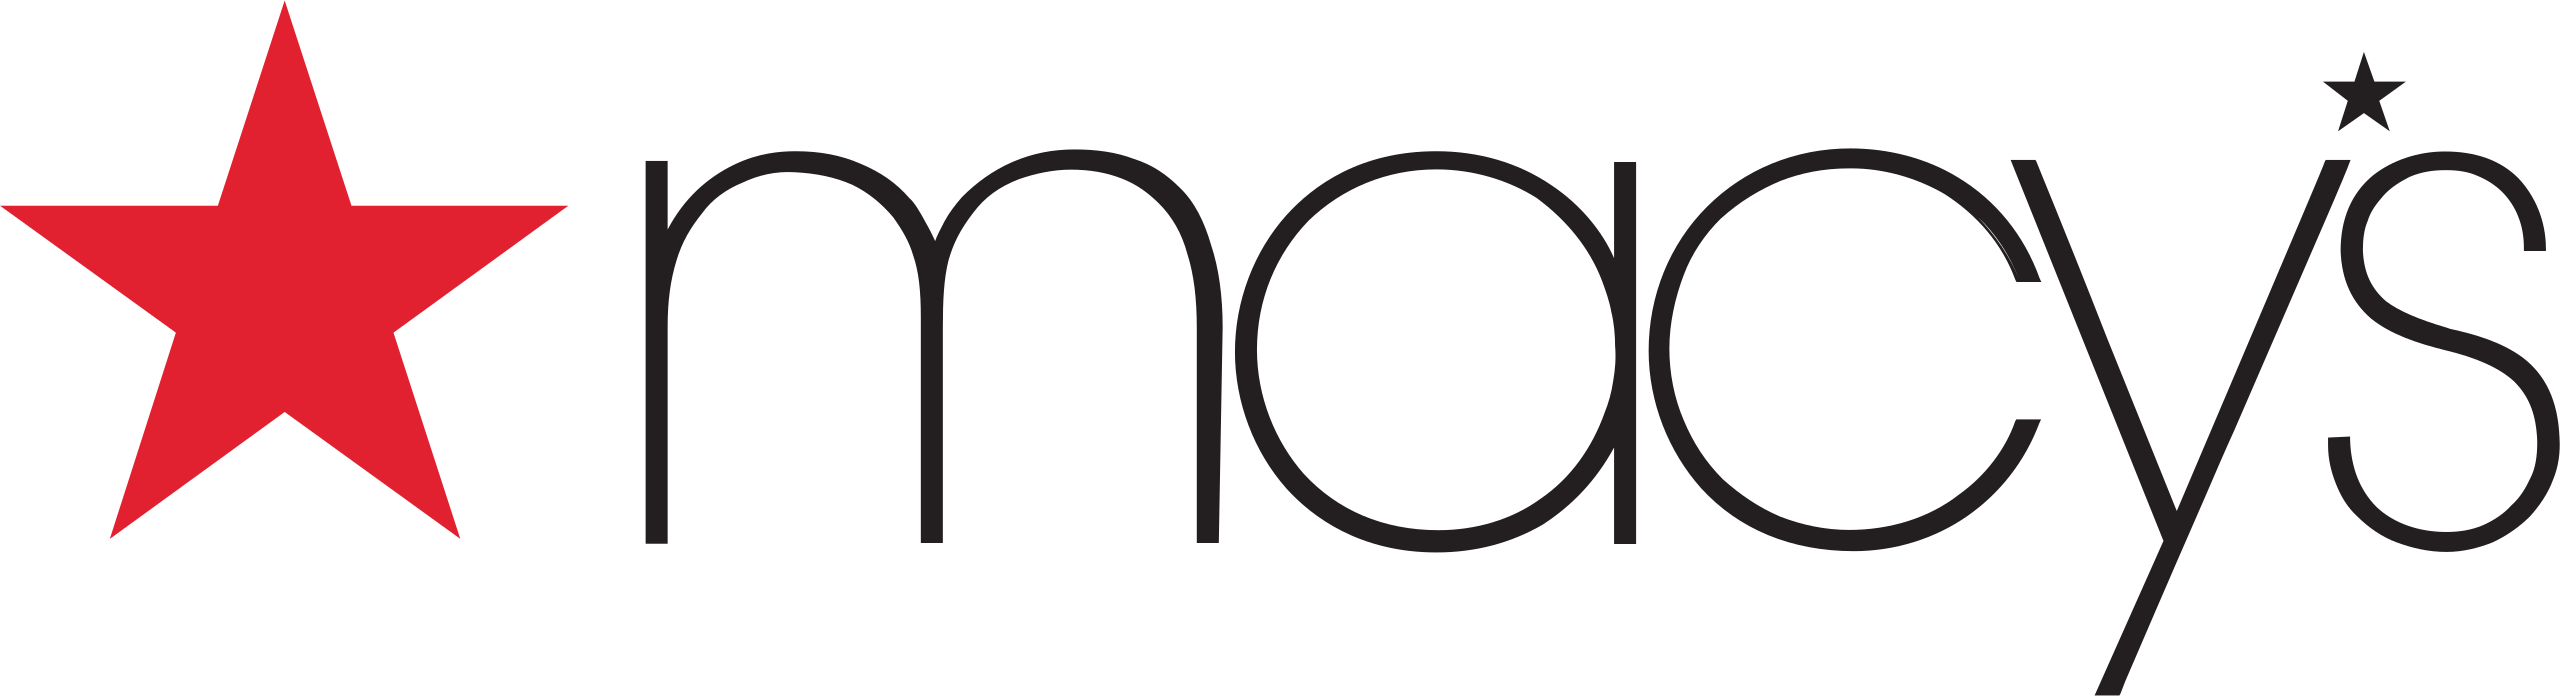 Macys_logo.svg